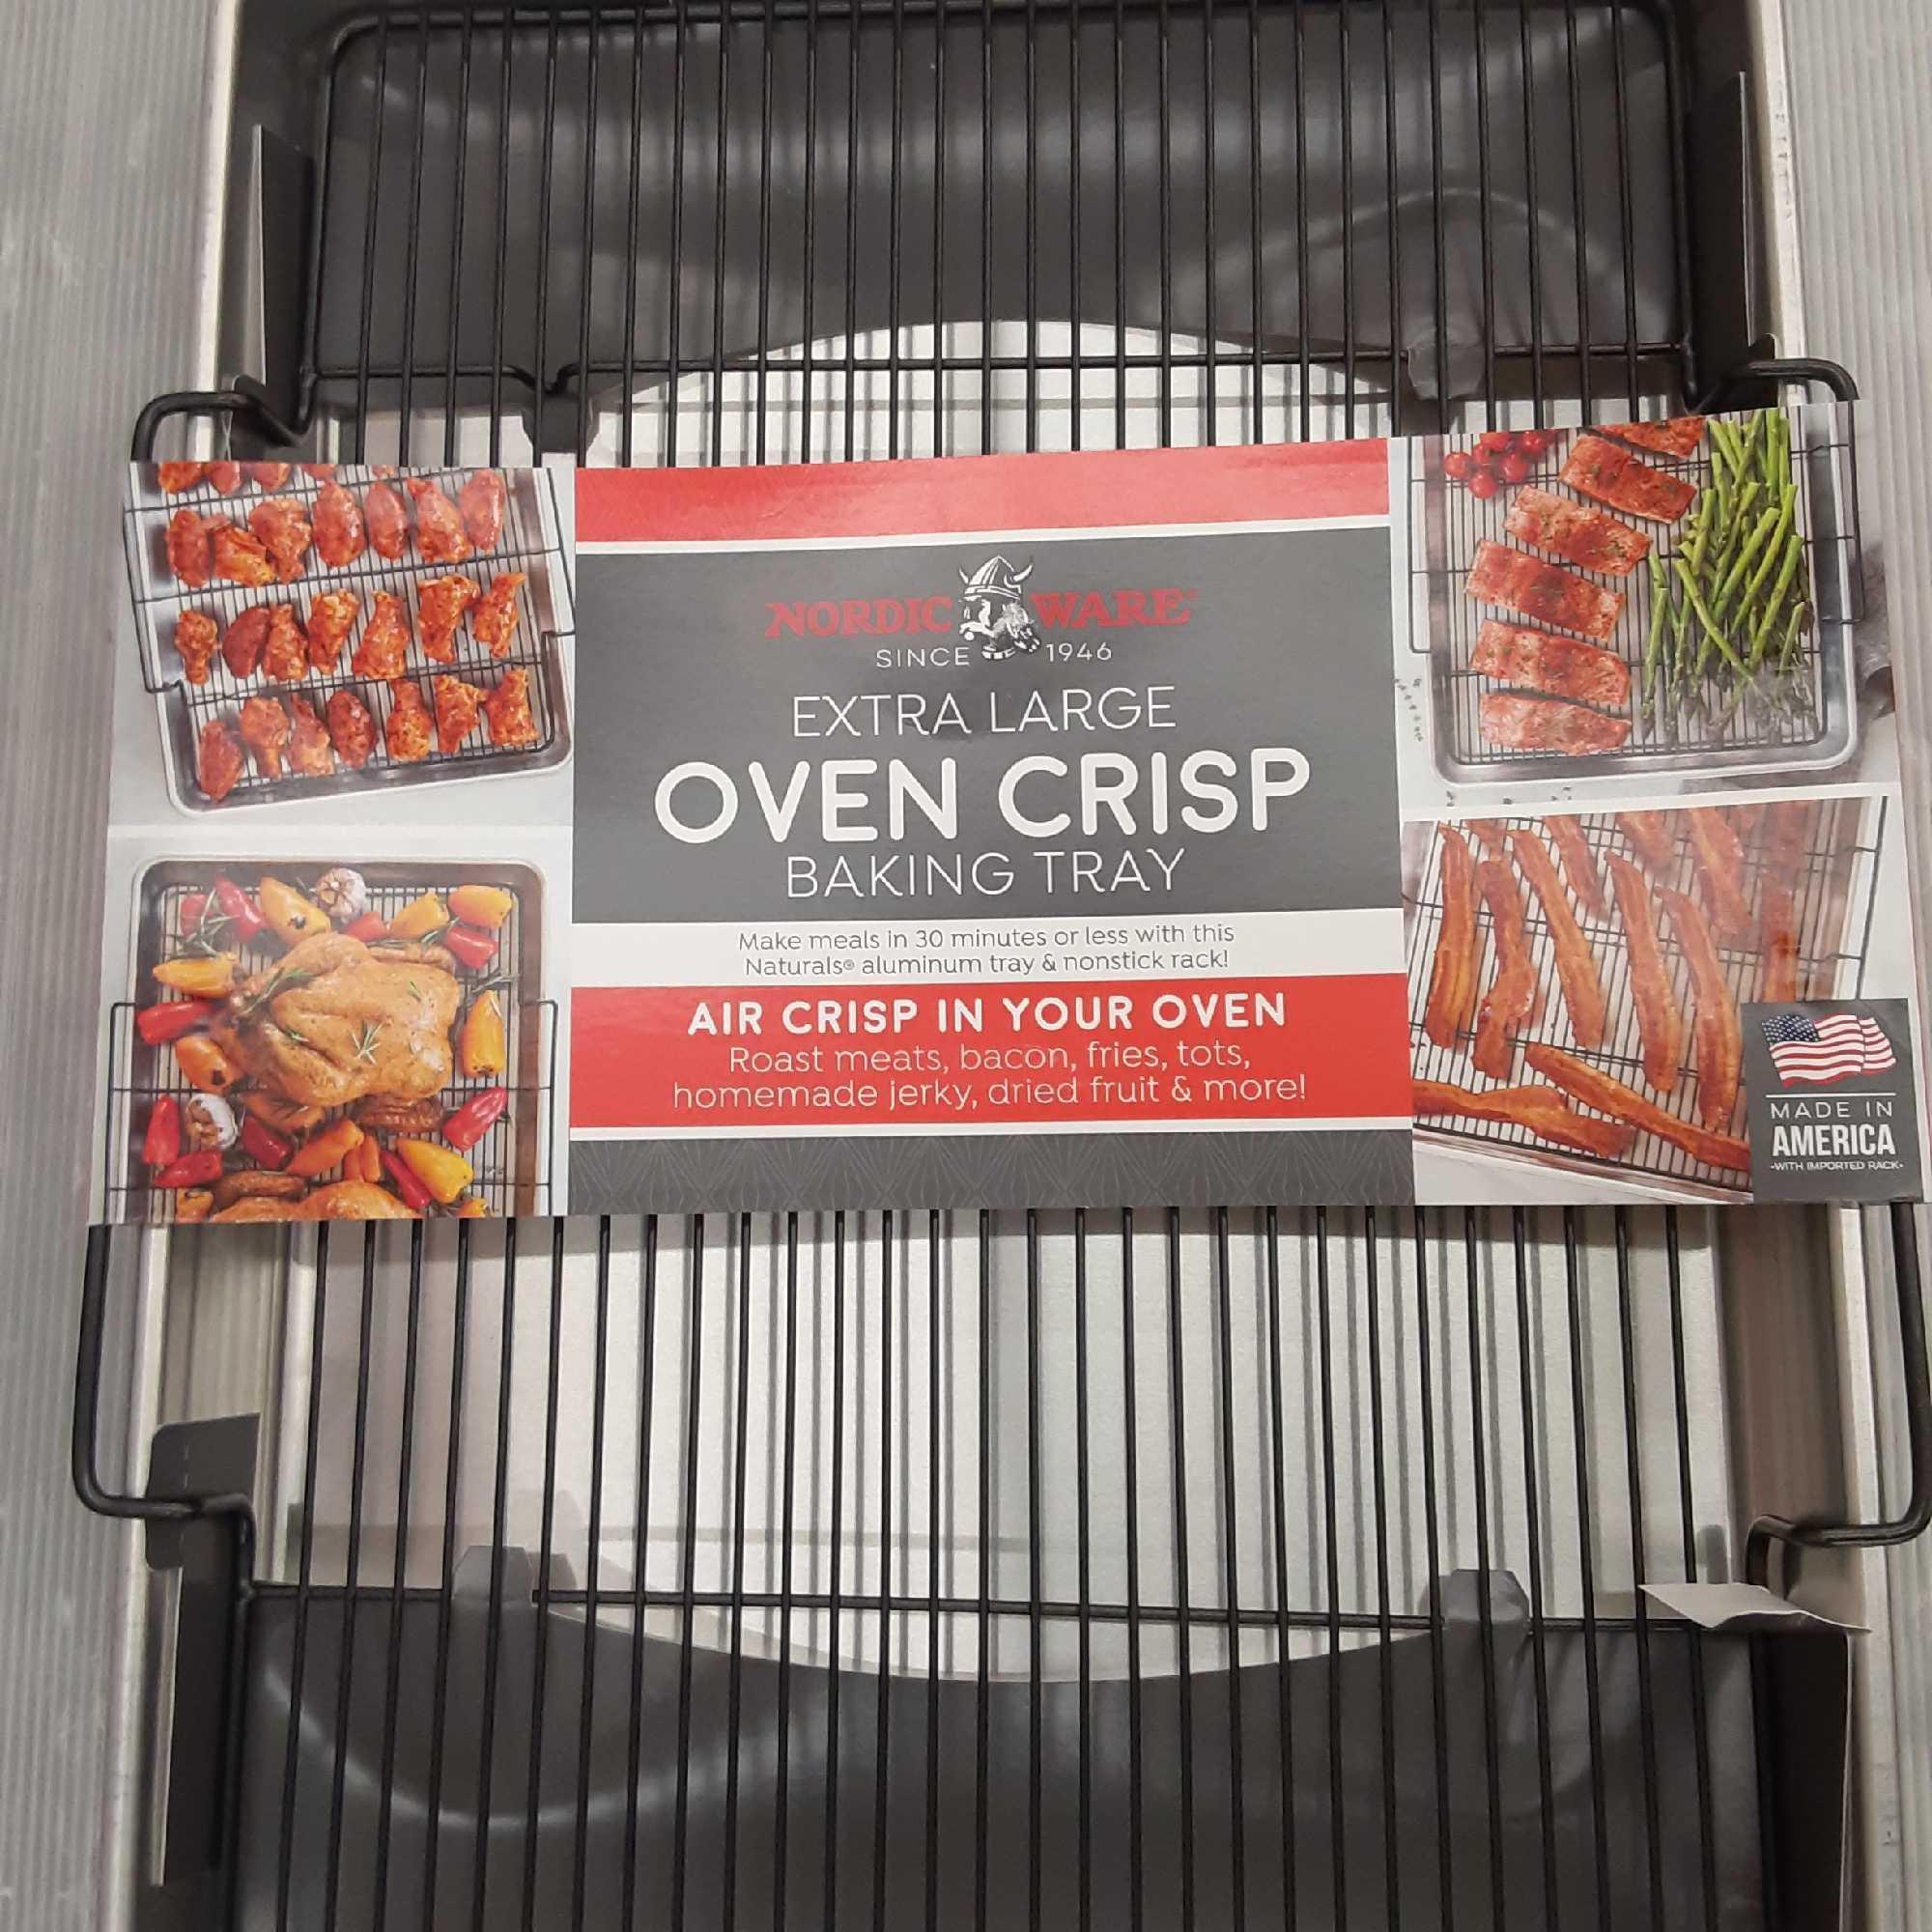 Extra Large Oven Crisp Baking Tray